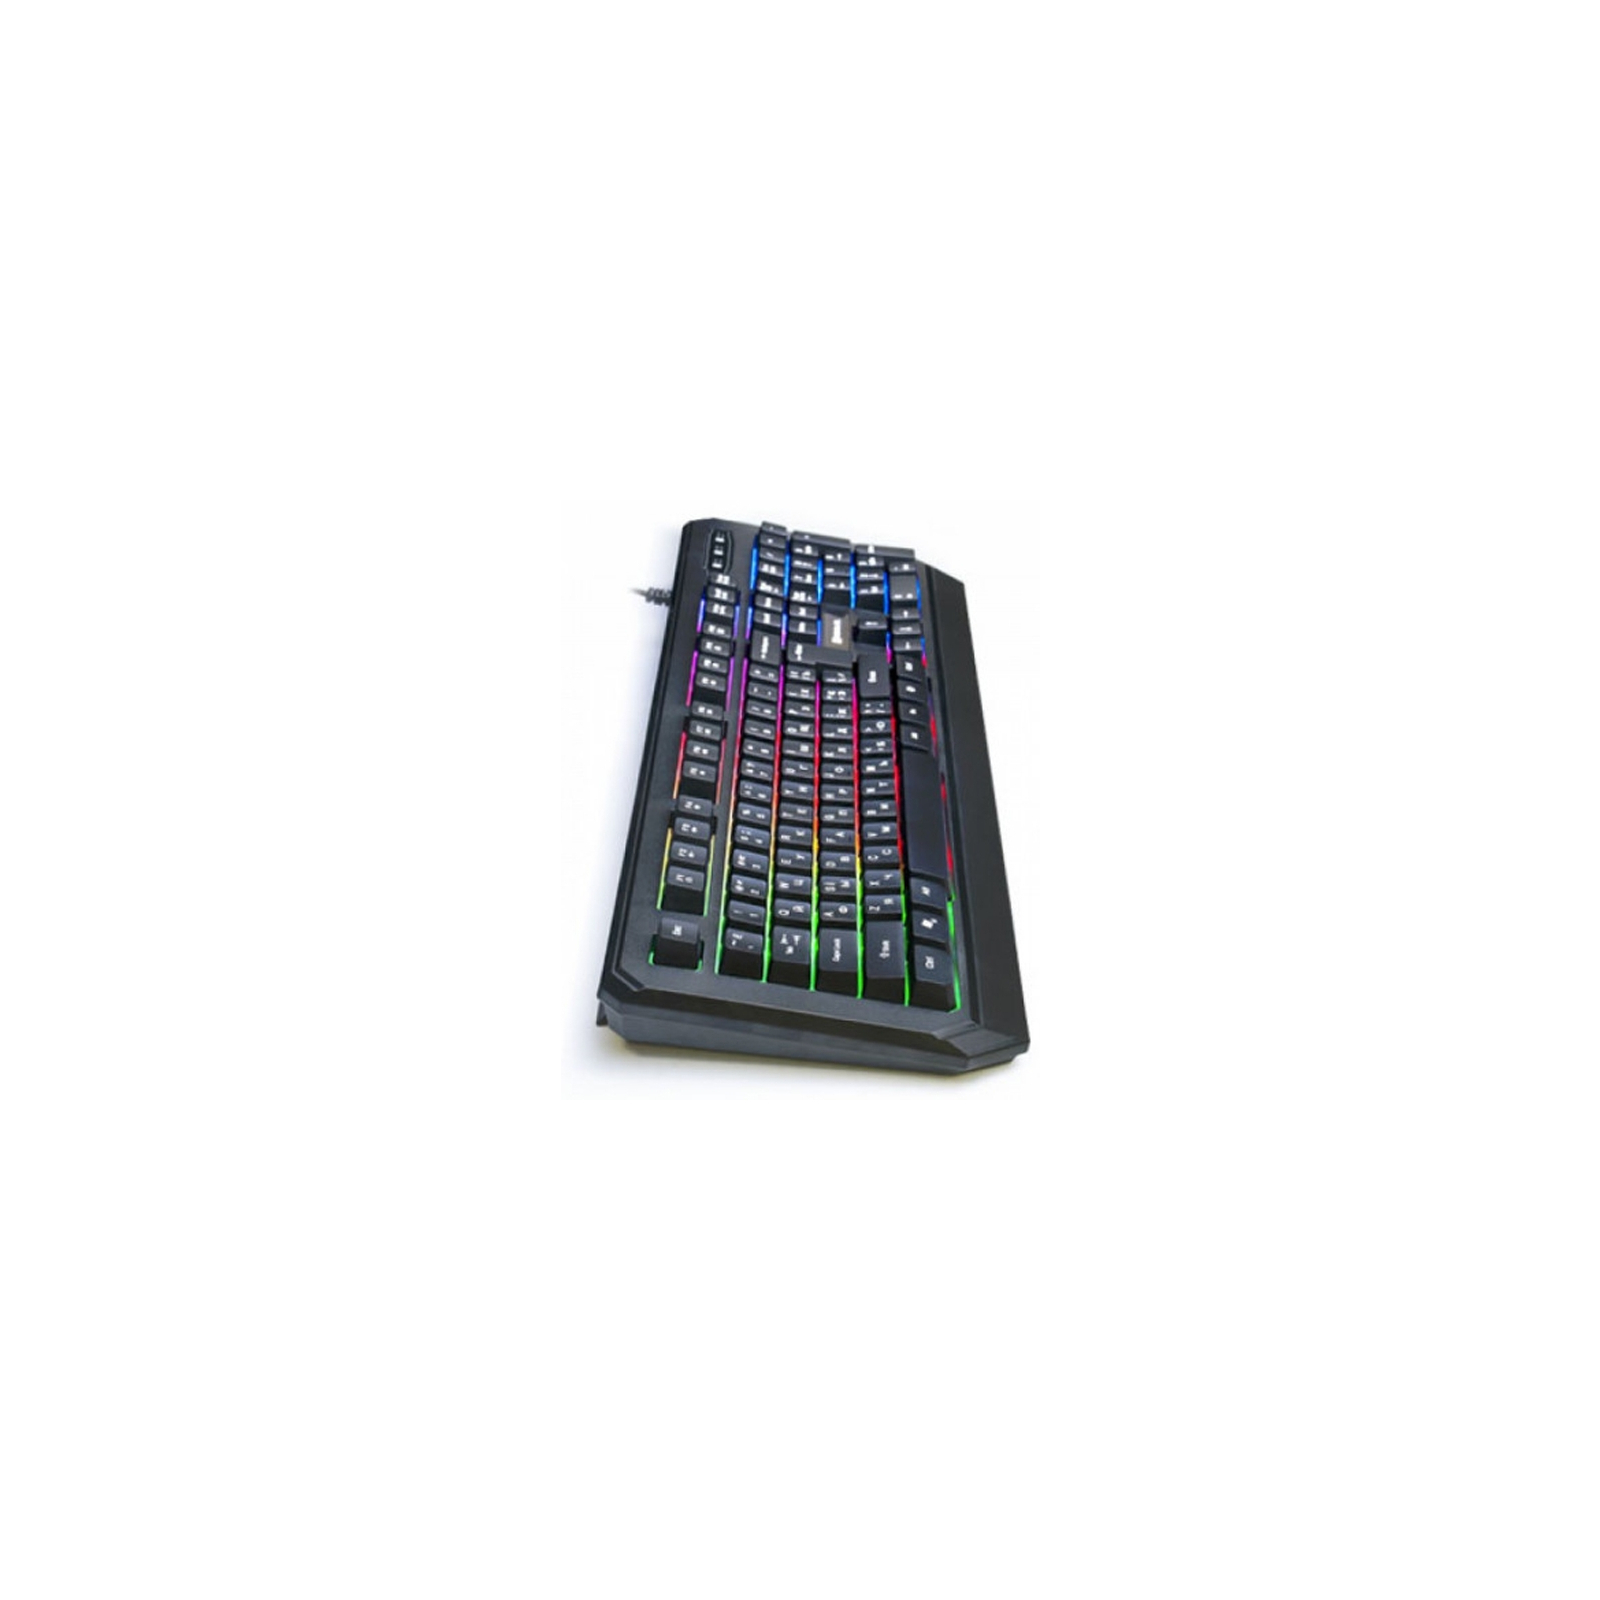 Клавиатура REAL-EL 7001 Comfort Backlit Black изображение 5